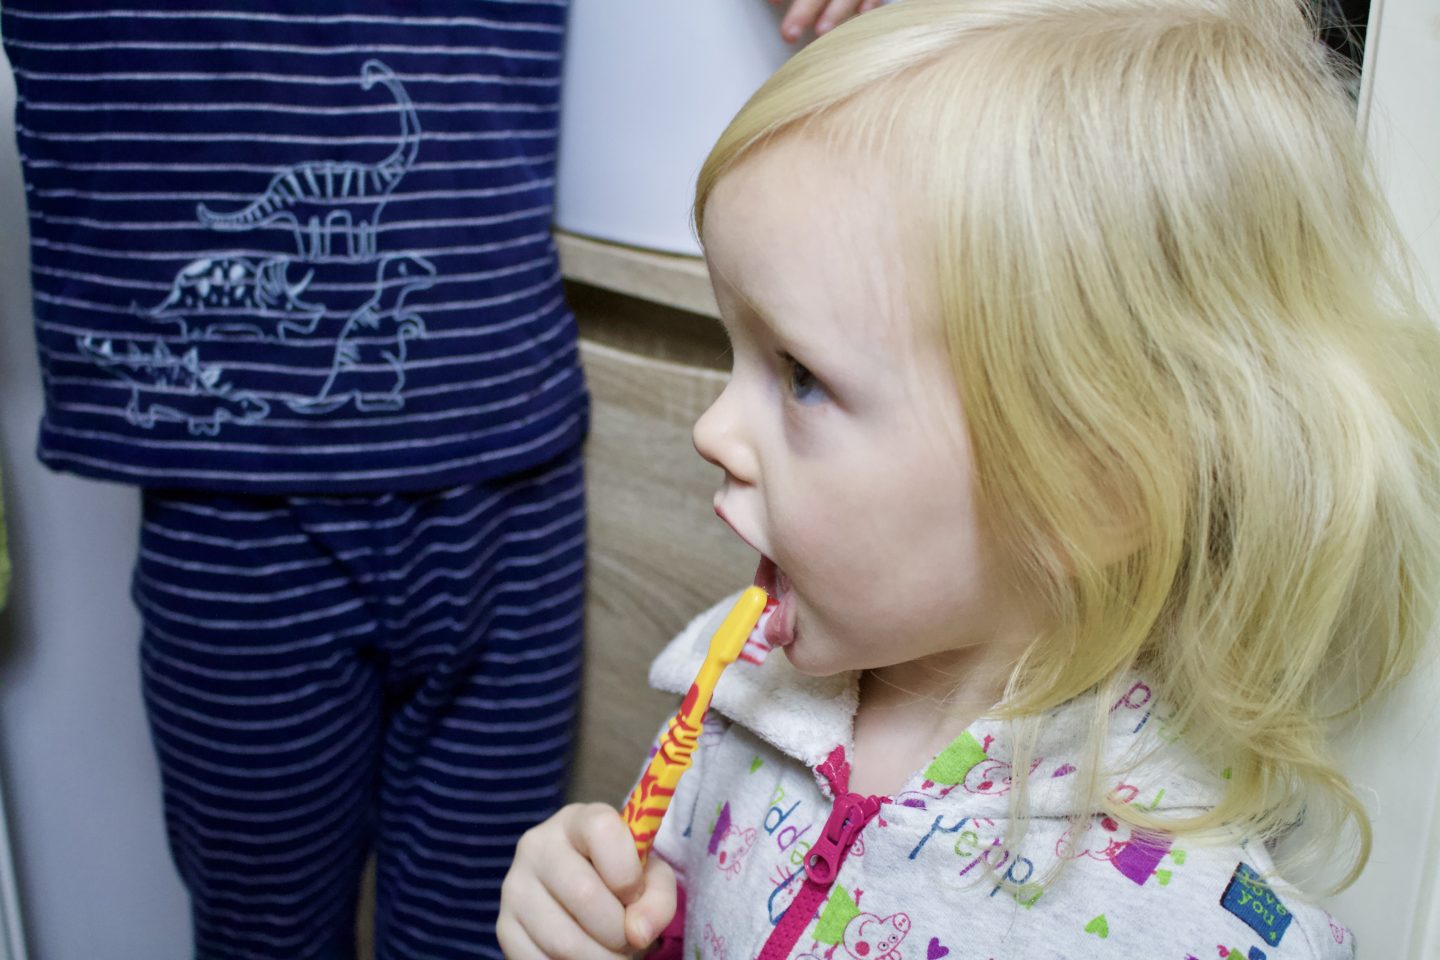 Blonde toddler brushing her teeth